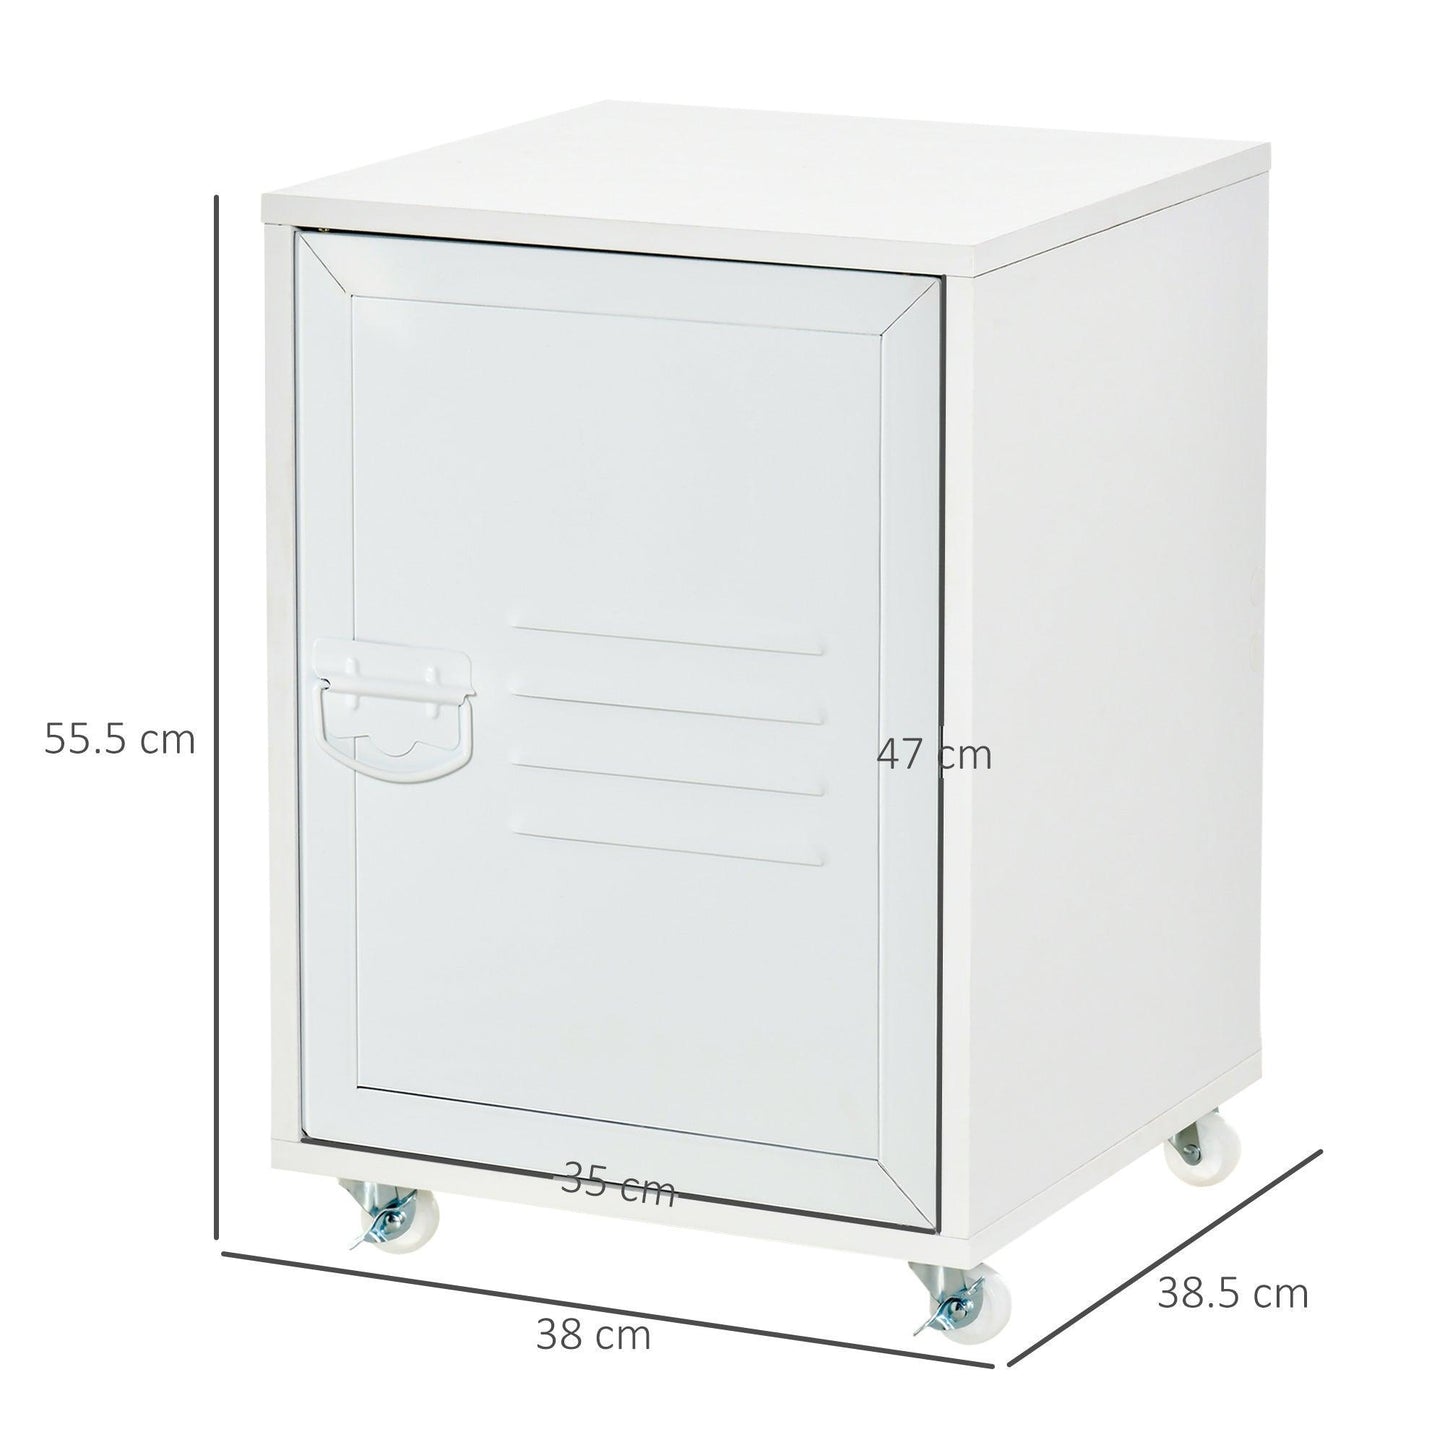 HOMCOM Industrial Rolling Bedside Table: Mobile Storage Cabinet - ALL4U RETAILER LTD